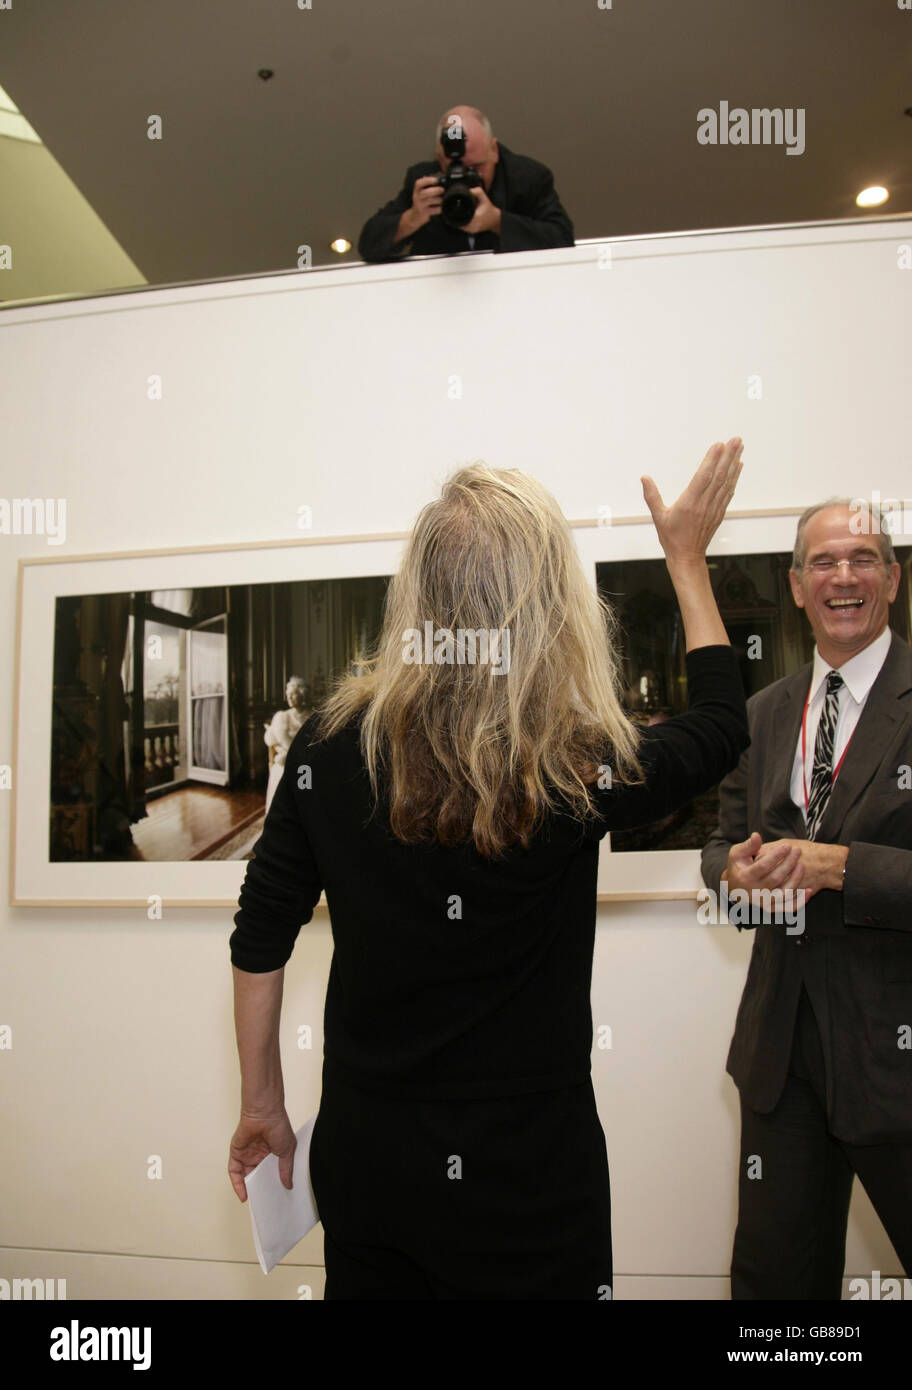 La photographe Annie Leibovitz lors du lancement par la presse de son exposition « Annie Leibovitz: A Photographer's Life 1990-2005 », à la National Portrait Gallery dans le centre de Londres. Banque D'Images